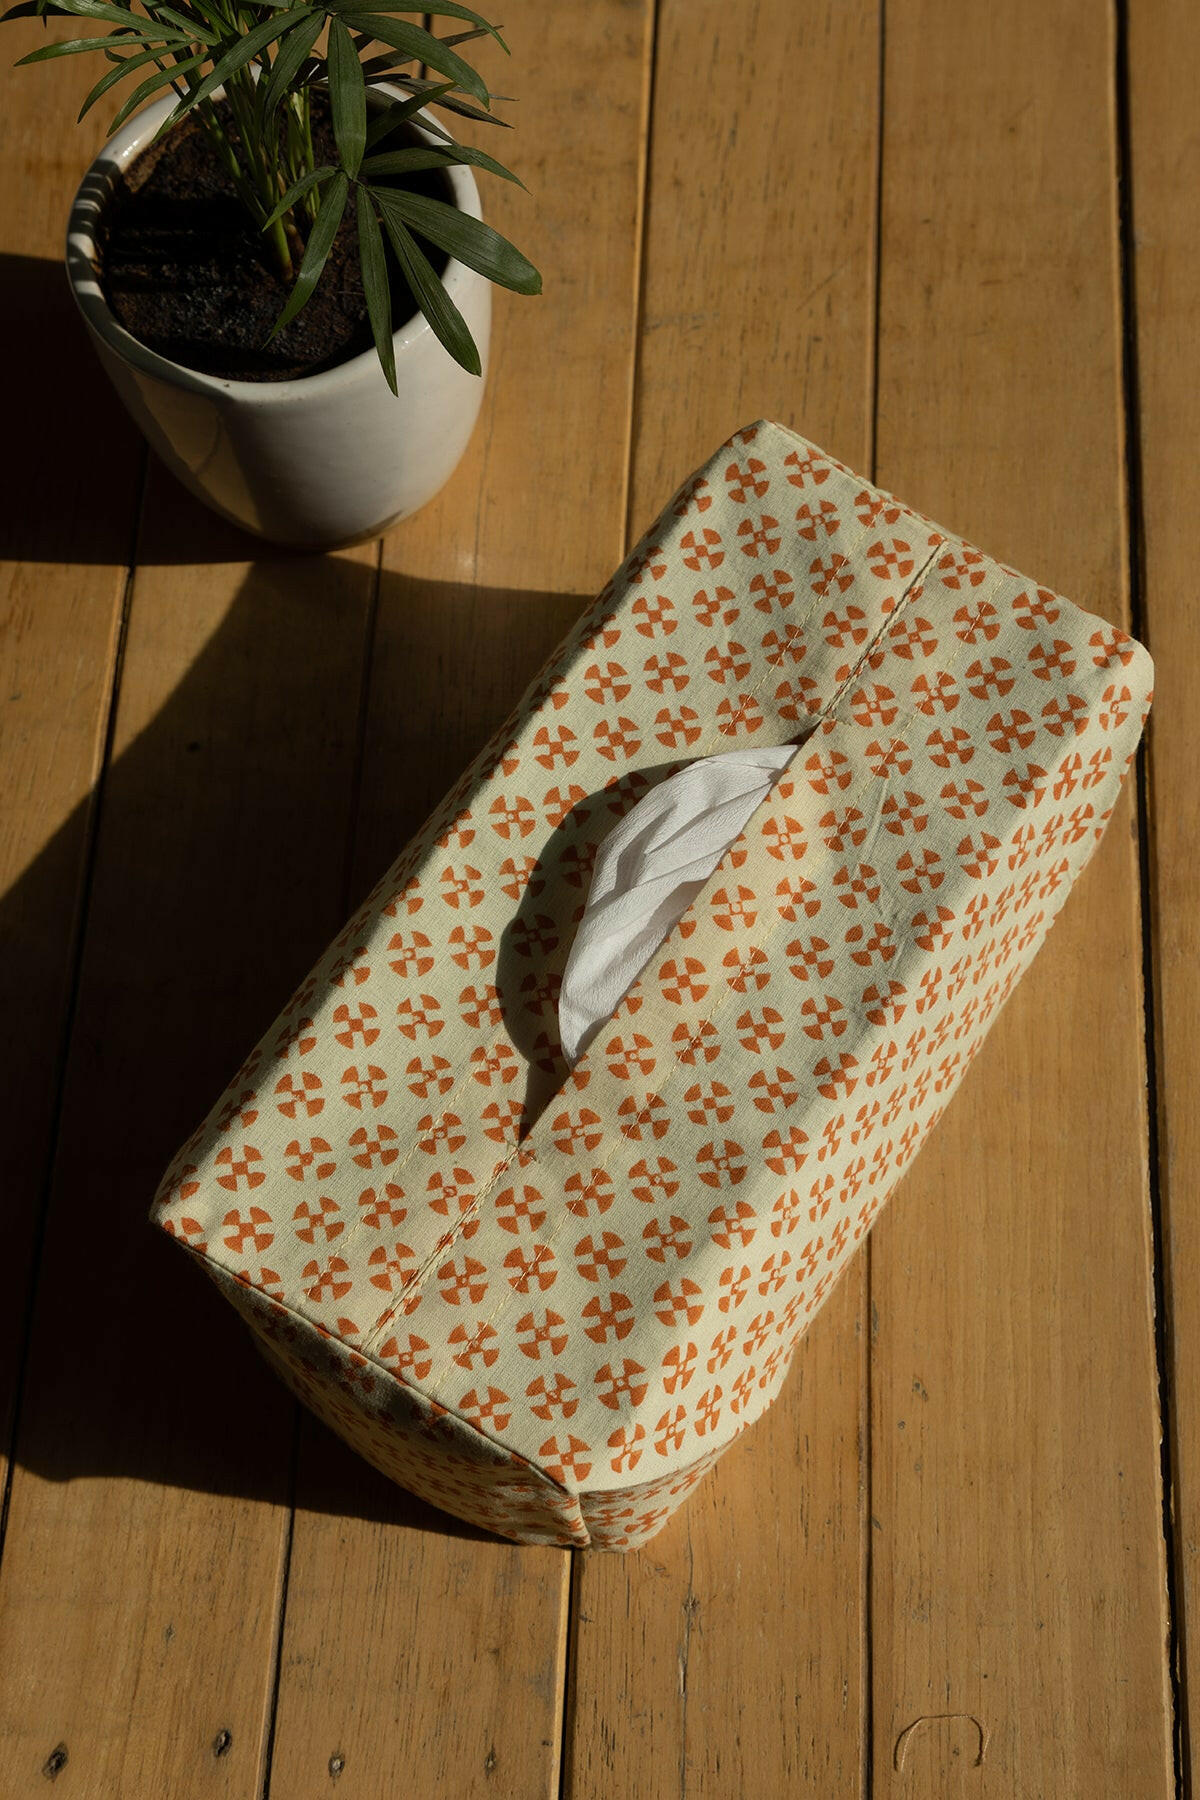 Tissue Box Cover